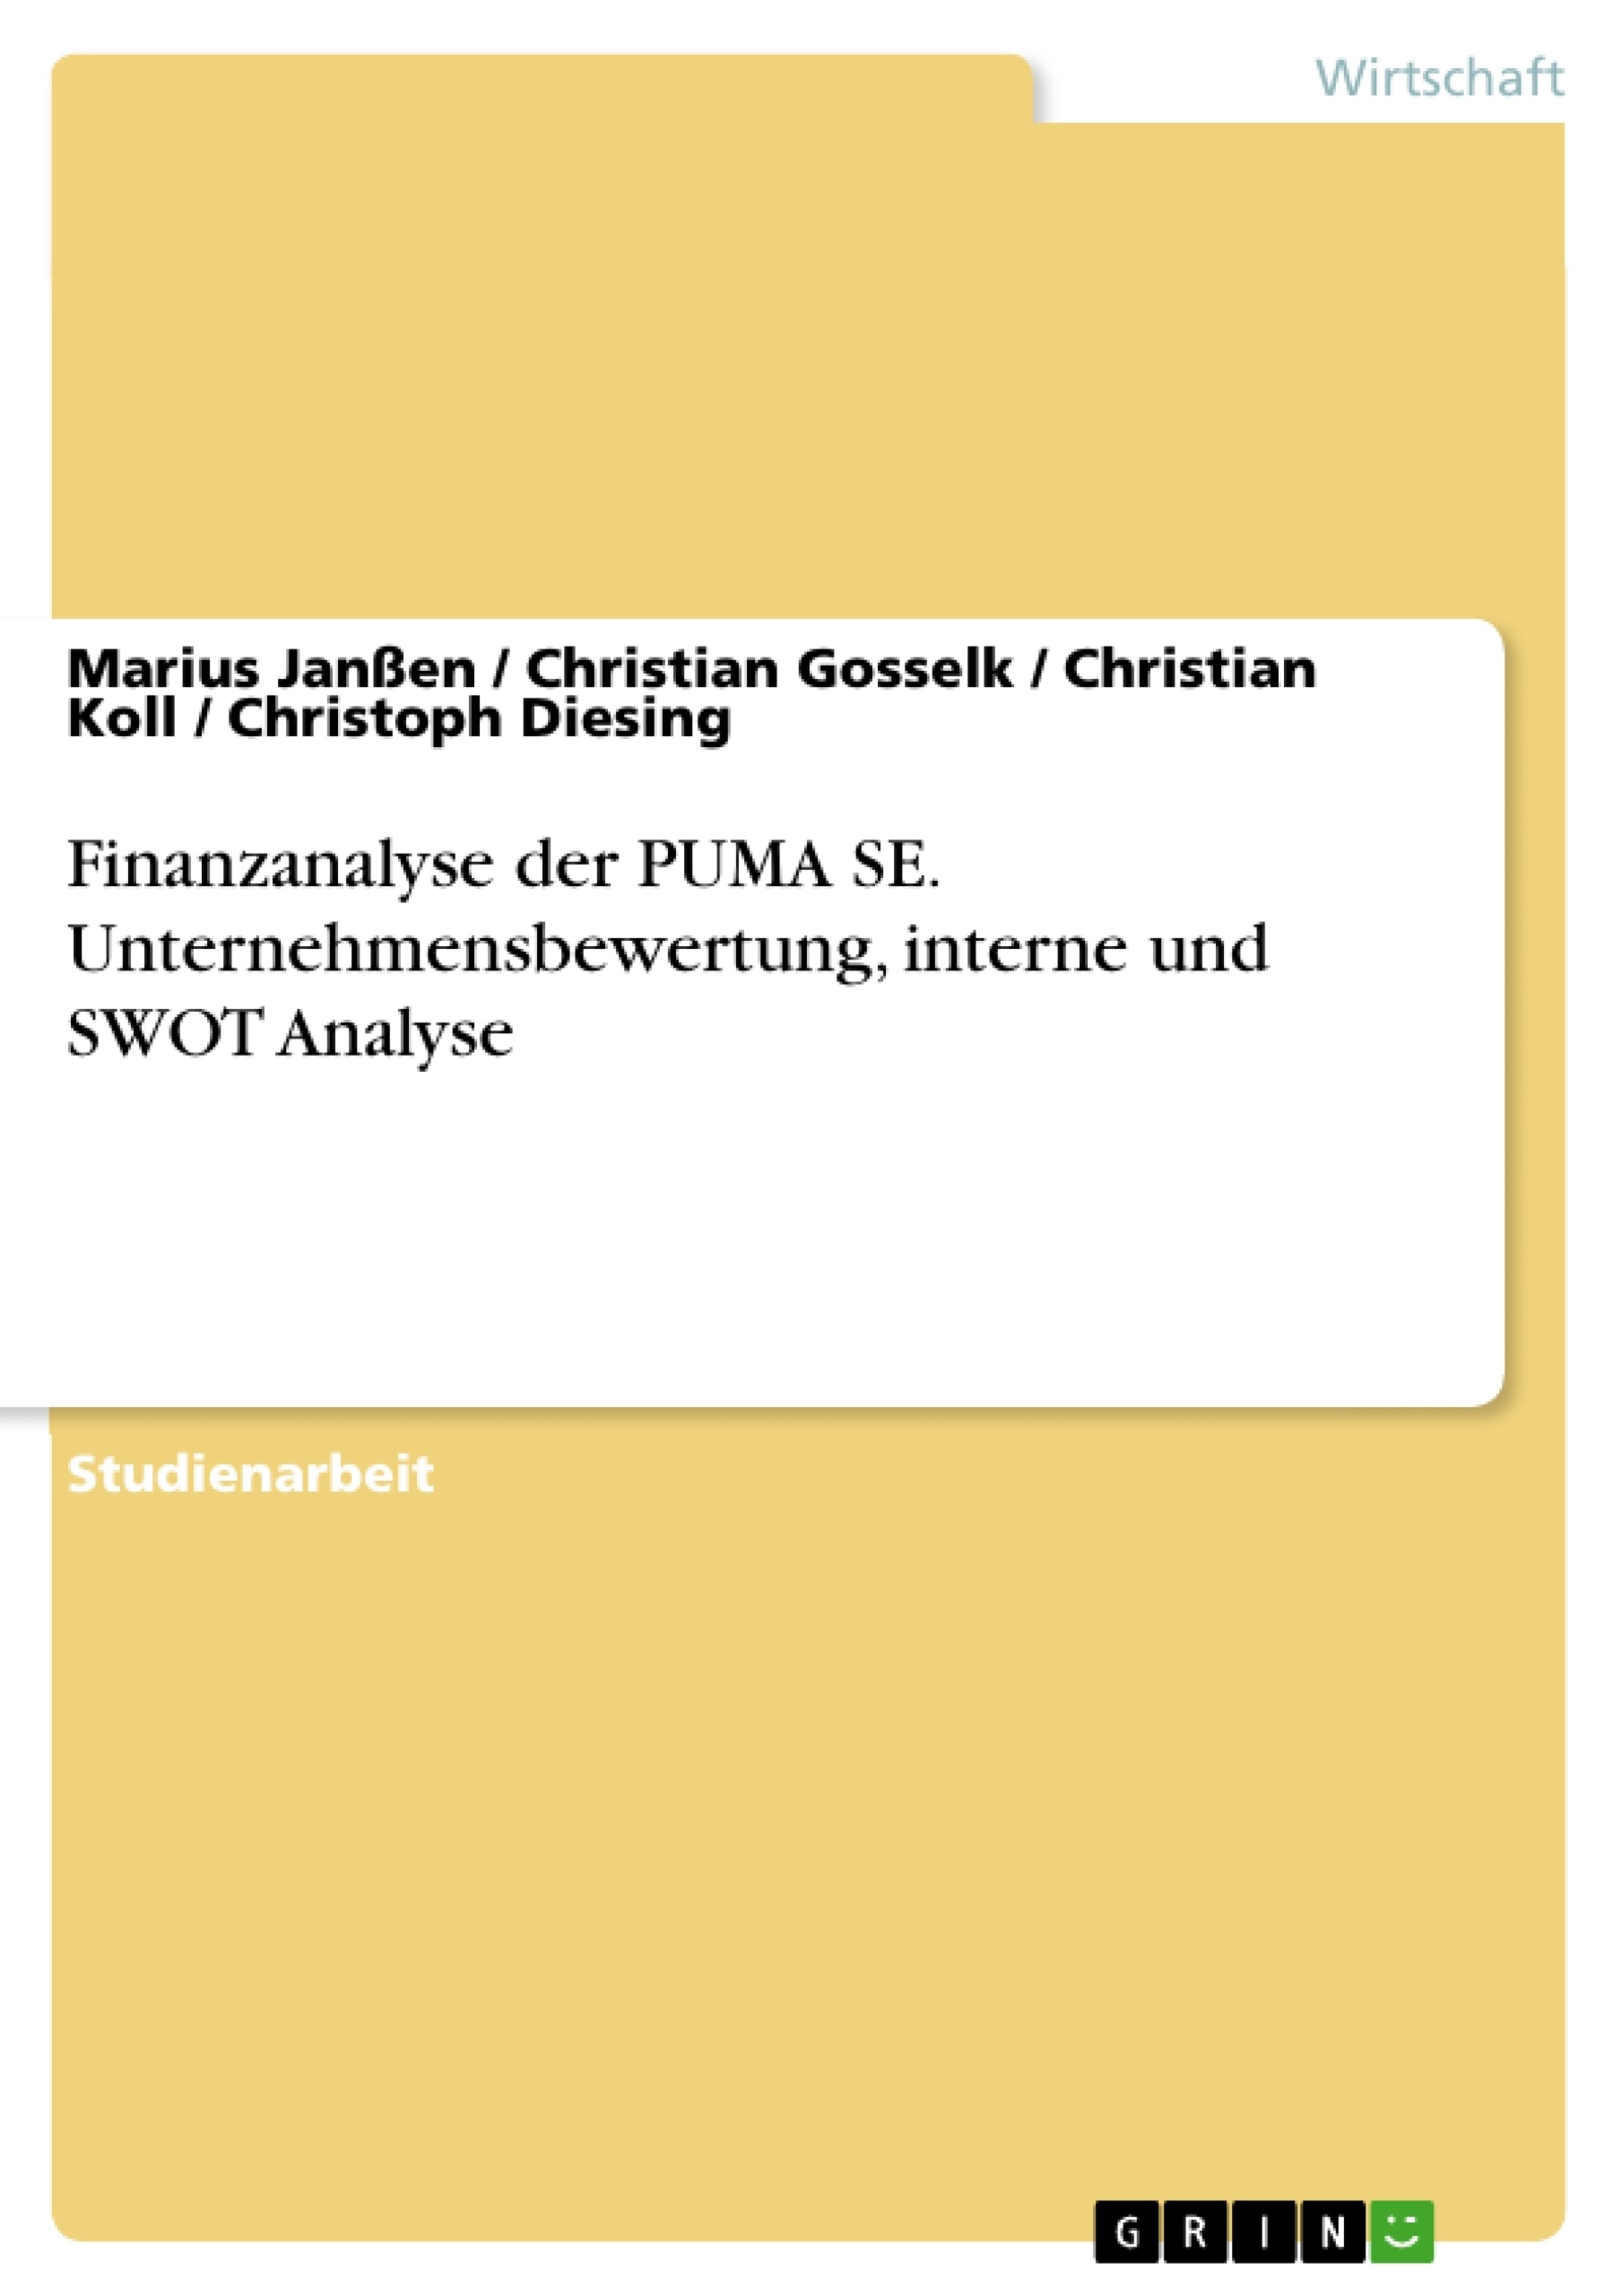 Title: Finanzanalyse der PUMA SE. Unternehmensbewertung, interne und SWOT Analyse